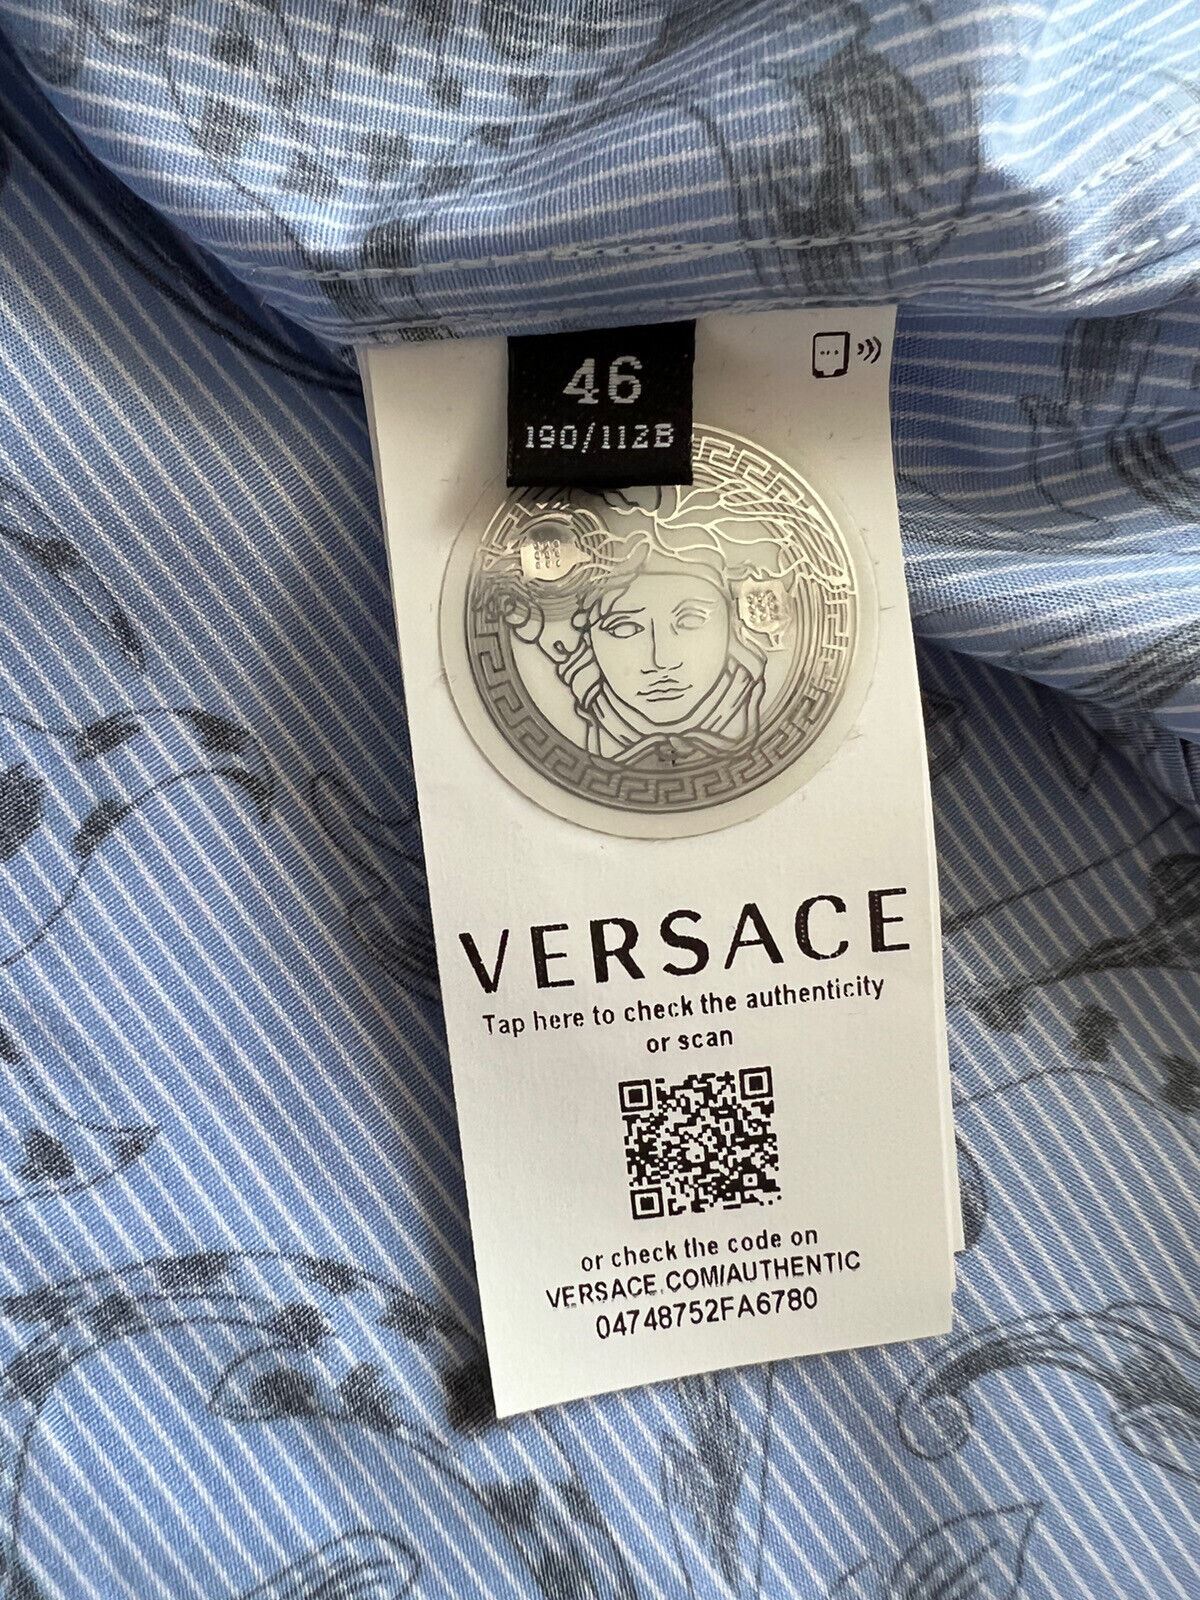 Синяя классическая рубашка Versace с графическим принтом NWT, 850 долларов США, размер 46, A87409, сделано в Италии